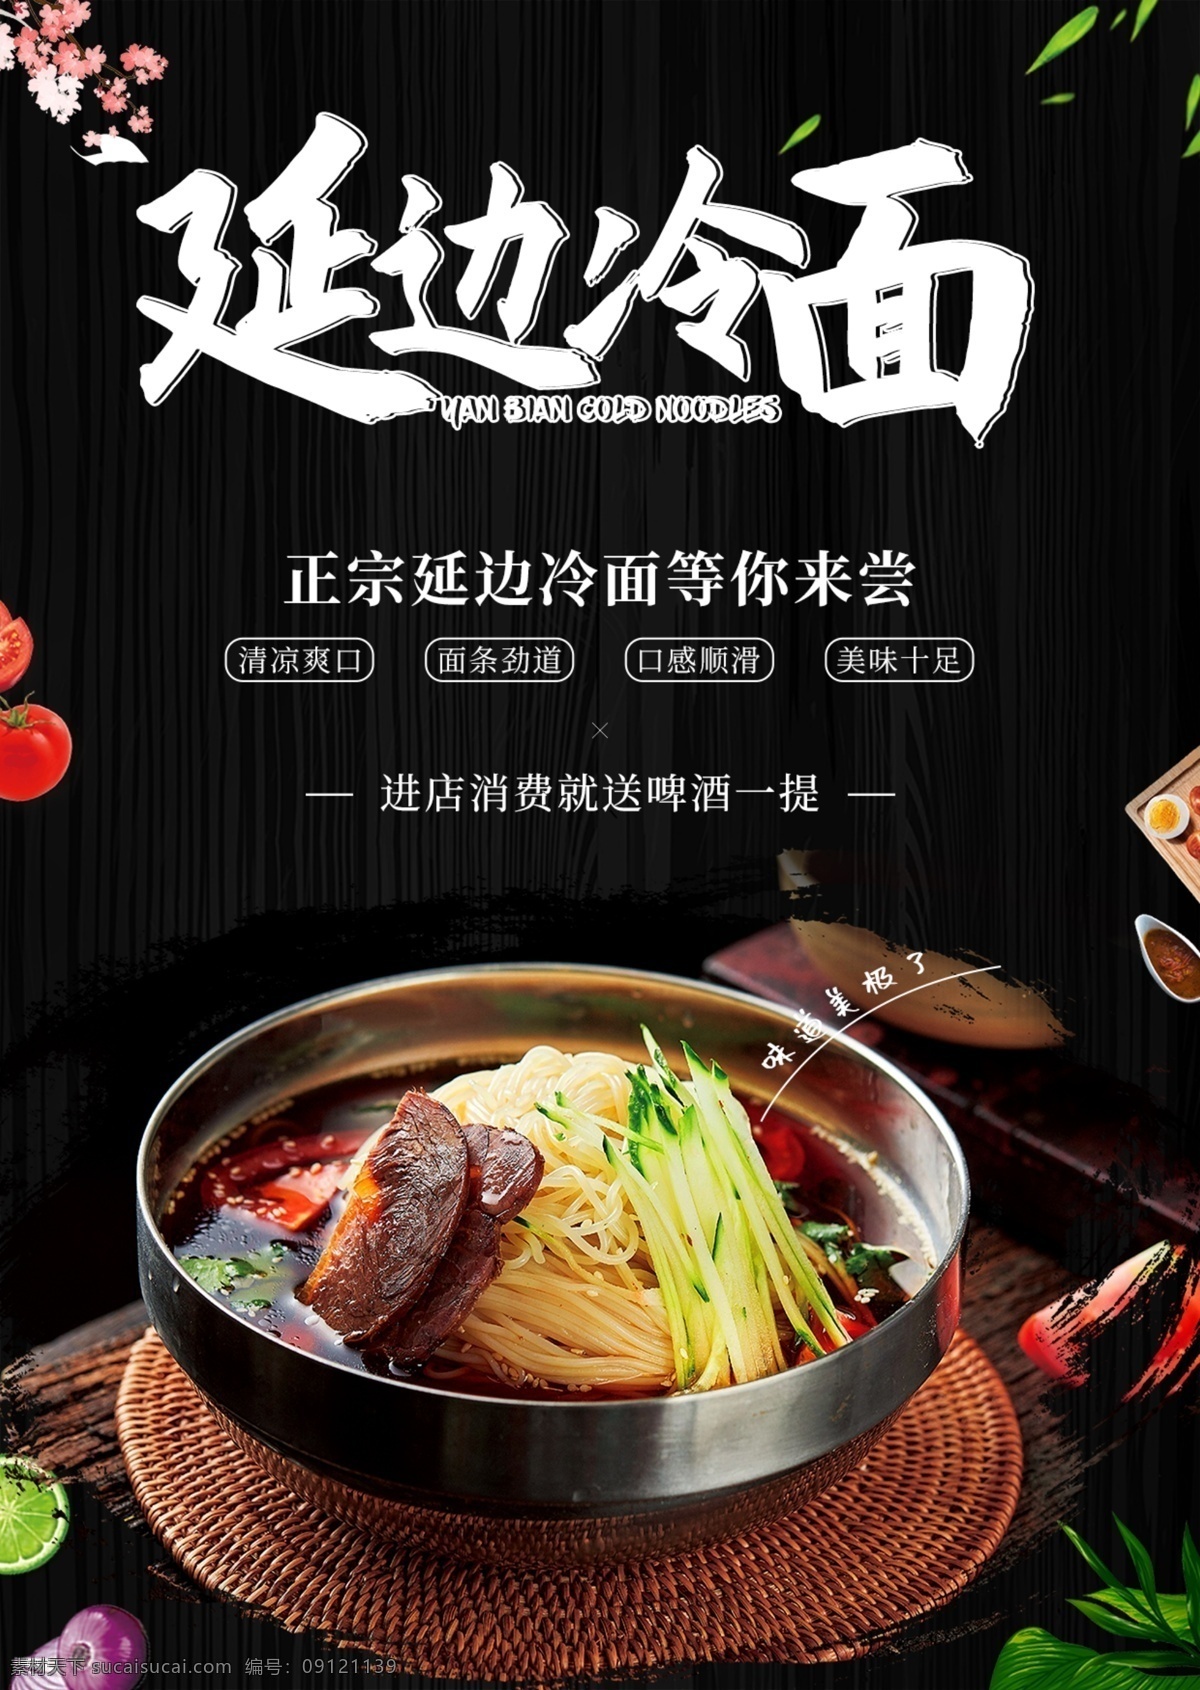 美食宣传单 美食 冷面 韩式 宣传单 海报 料理 延边 延吉 黑色 菜单 简约 分层